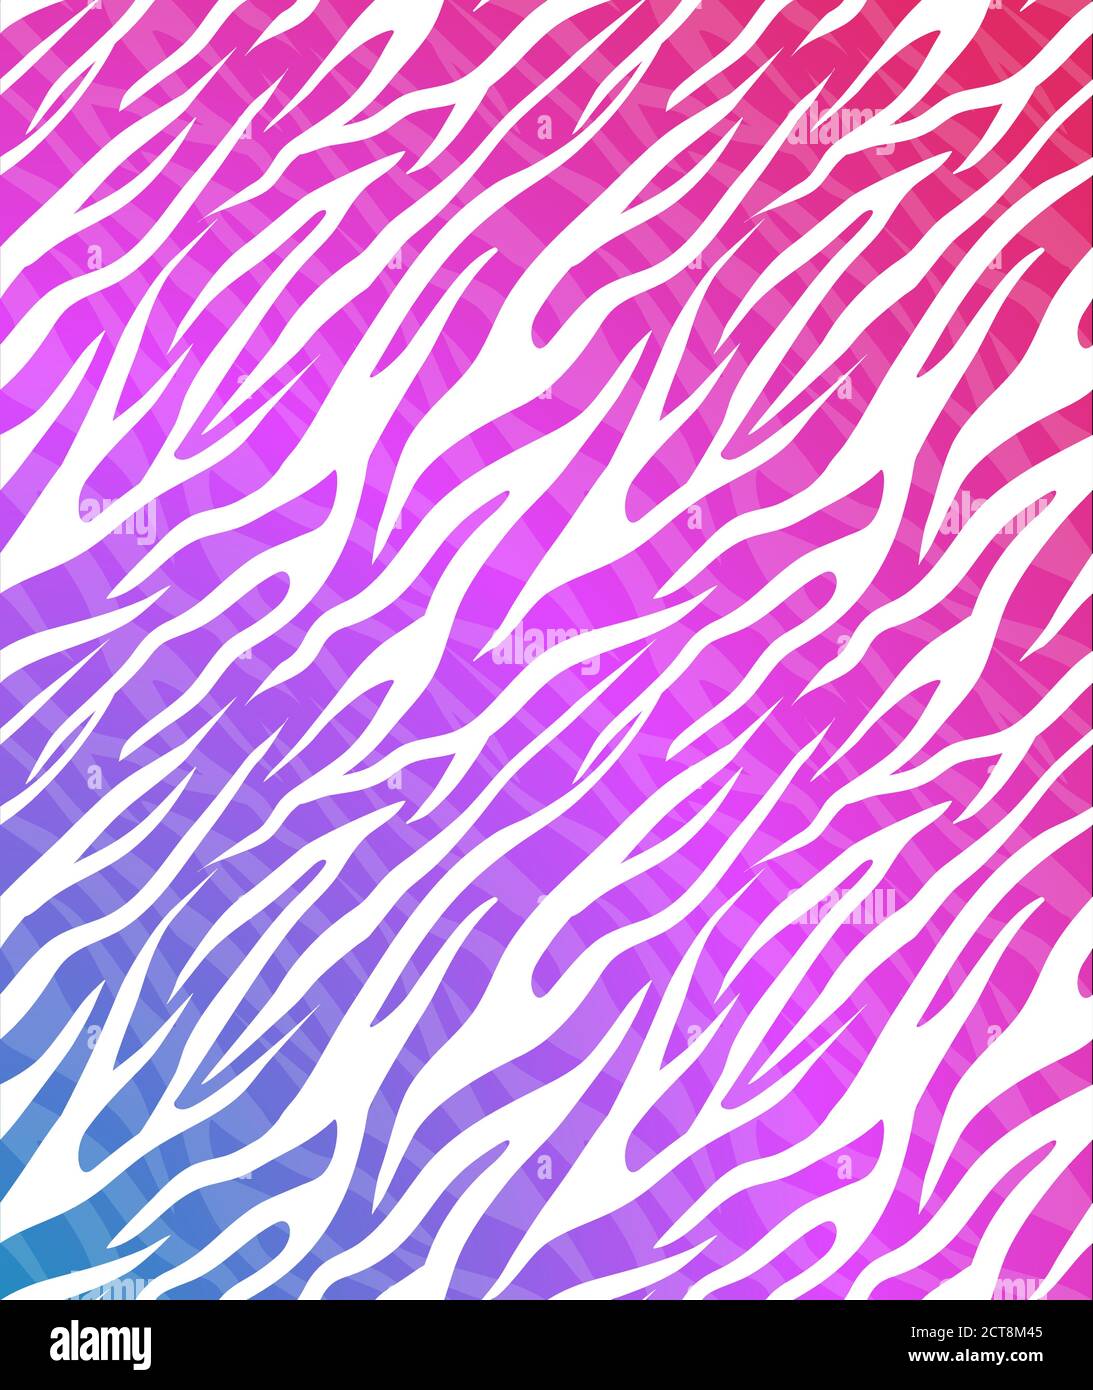 pink neon zebra backgrounds